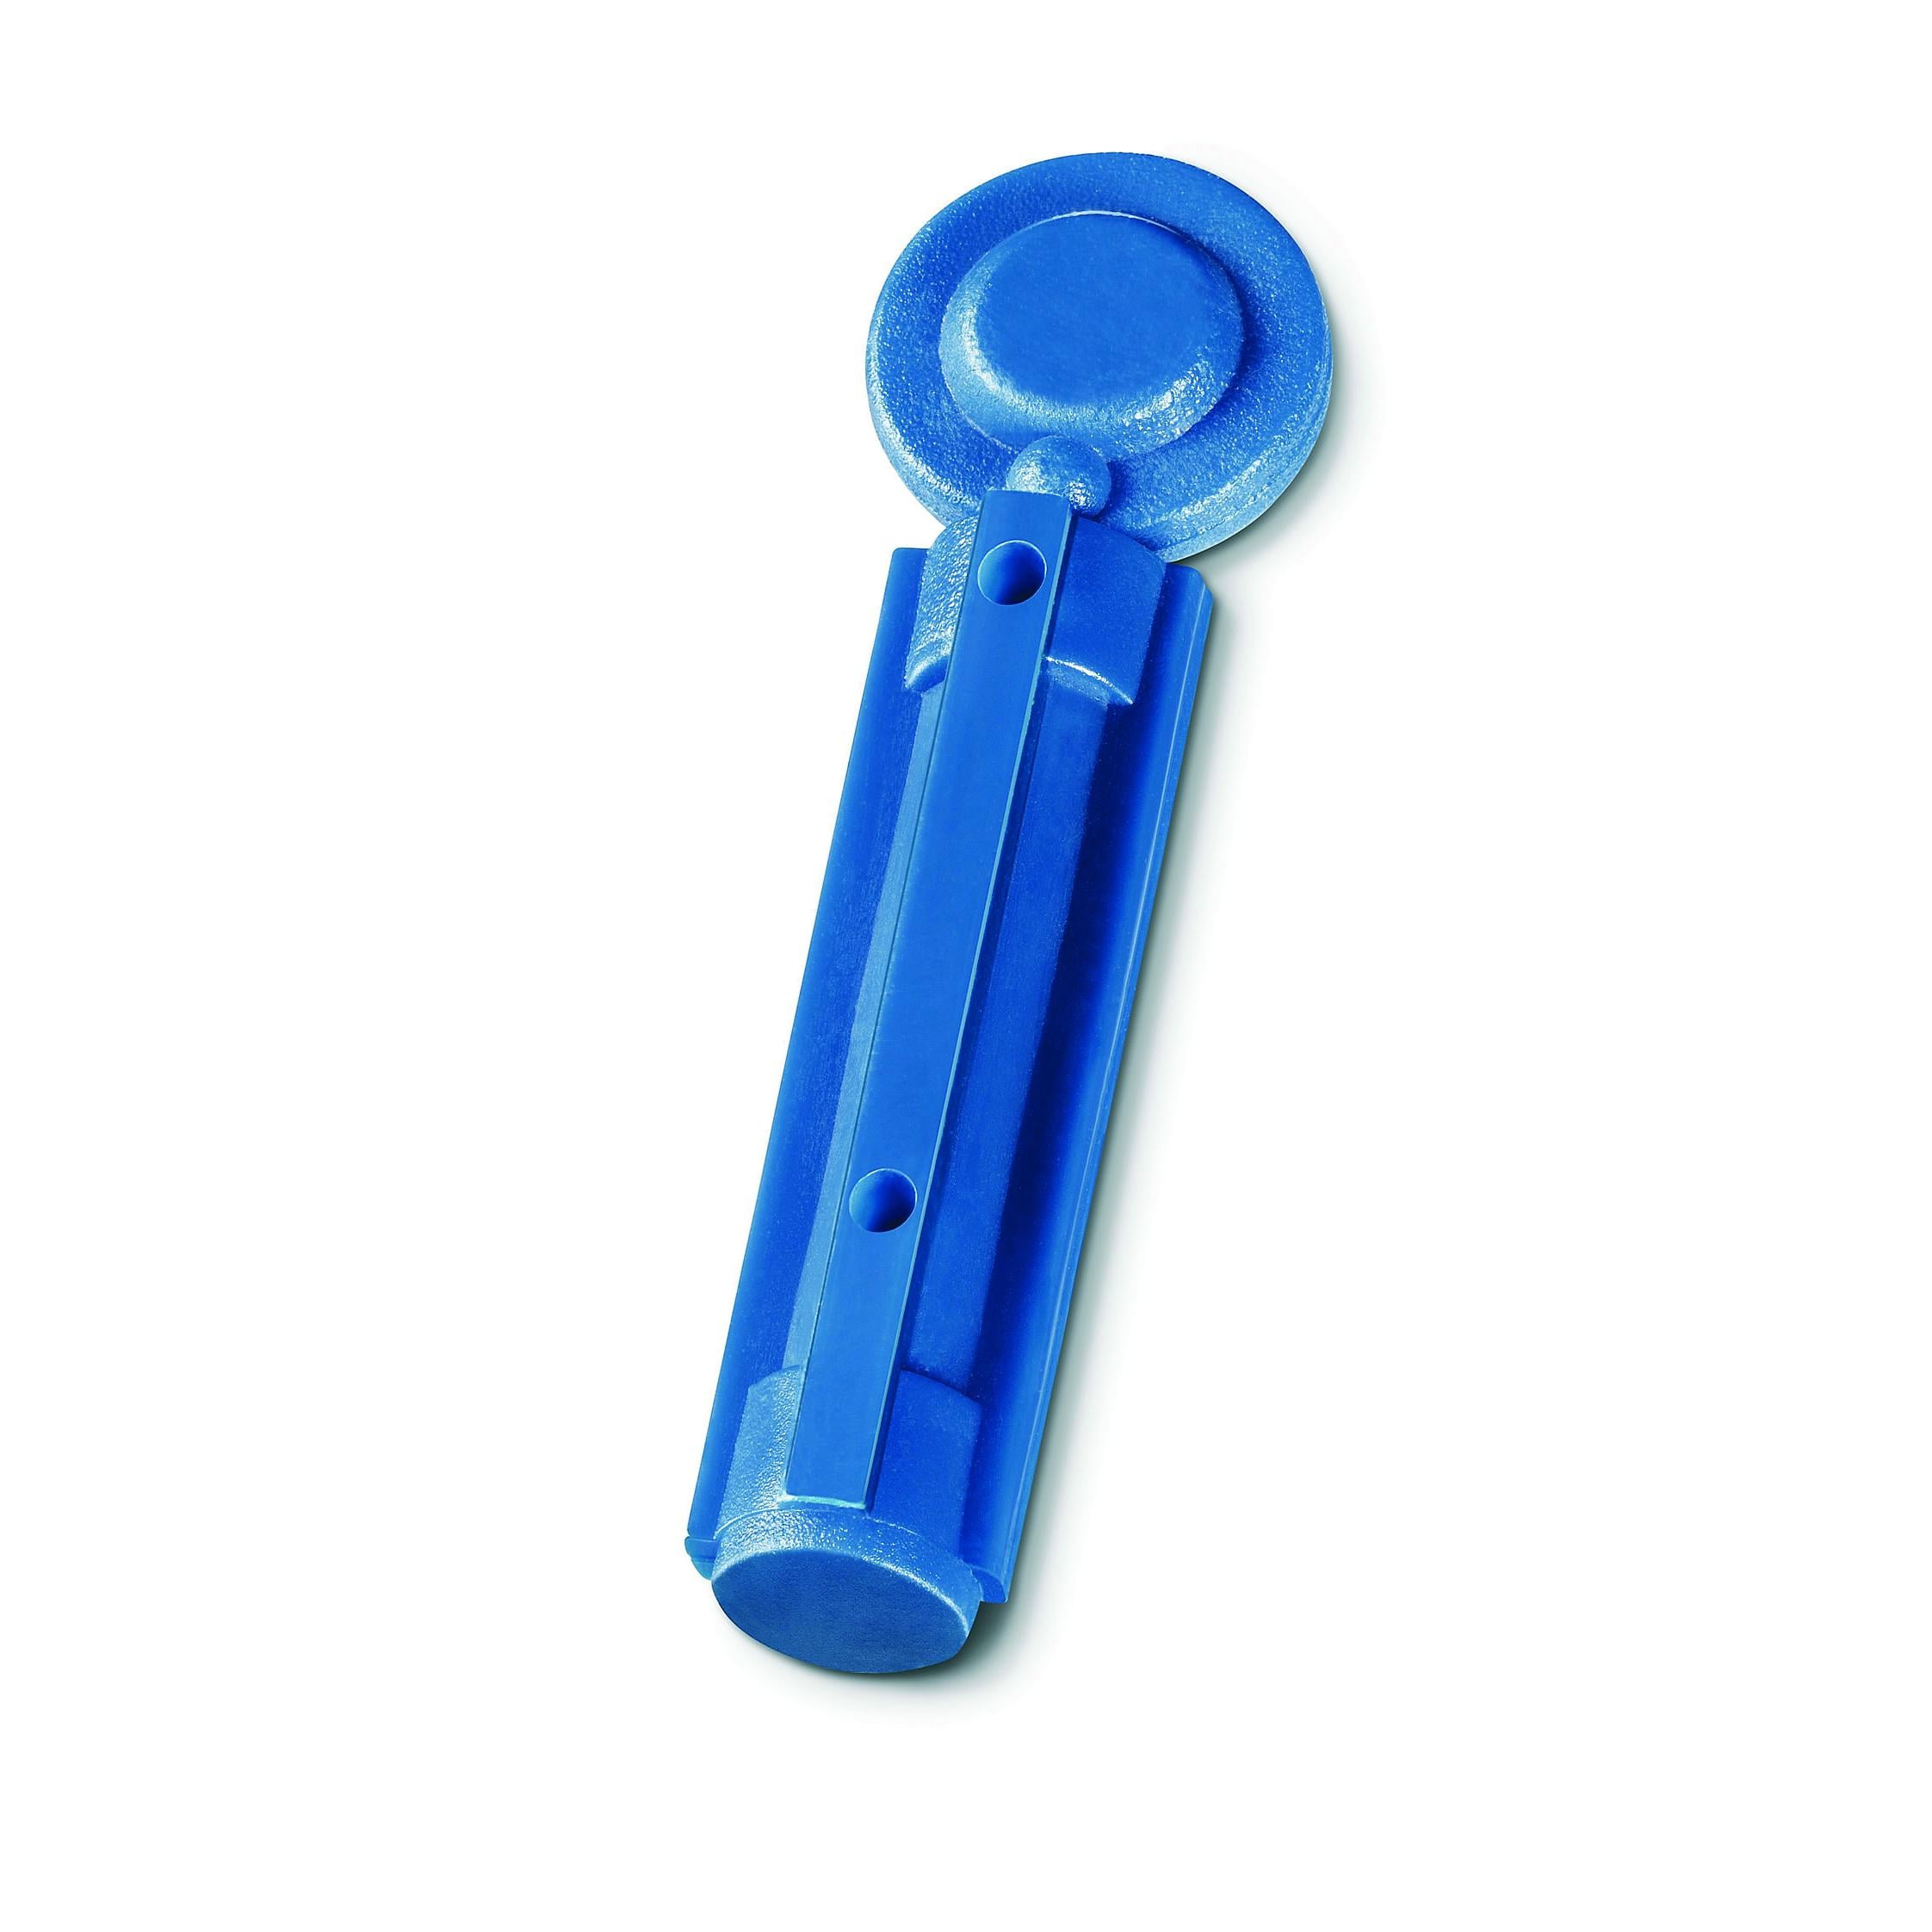 Nadel-Lanzetten- Blau, steril, 21G, Stechtiefe - 2,2 mm, Box mit 100 Stück [BEURER]